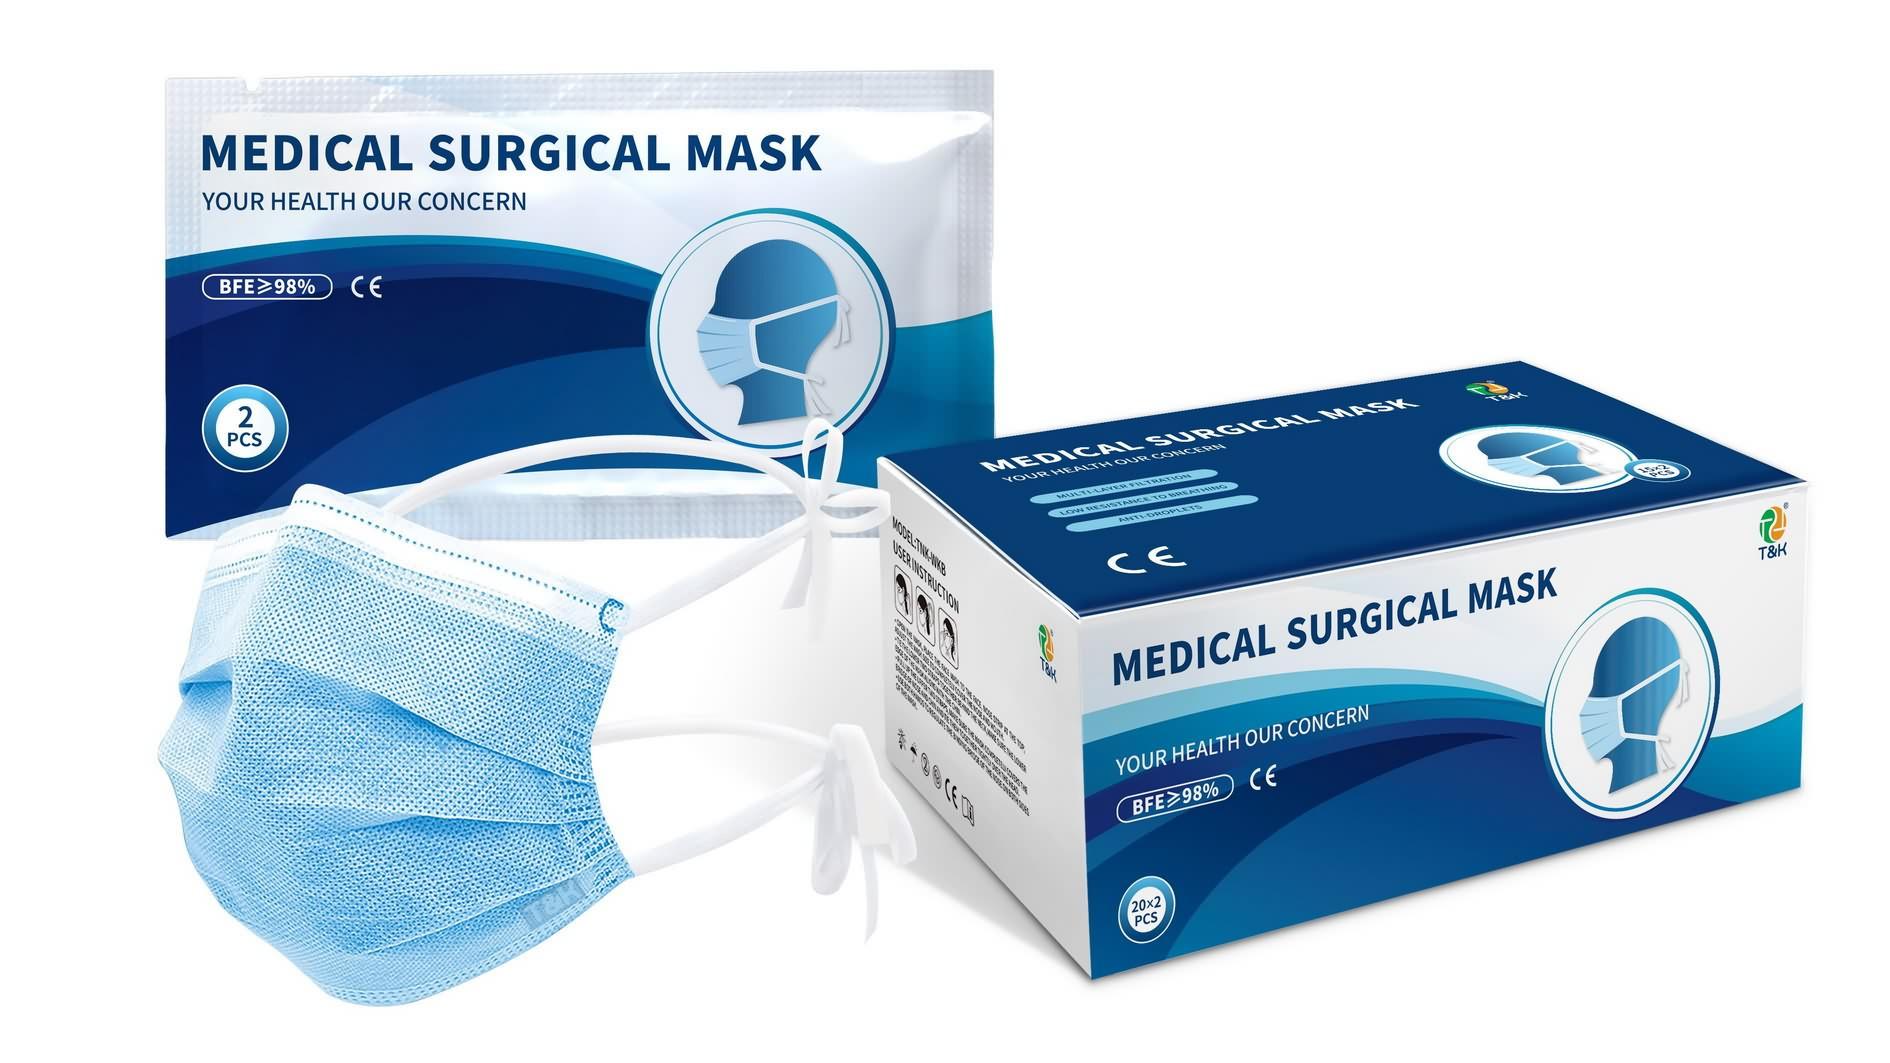 Uma máscara cirúrgica é uma máscara médica? O que é uma máscara cirúrgica médica? - famoso preço de máscara cirúrgica médica